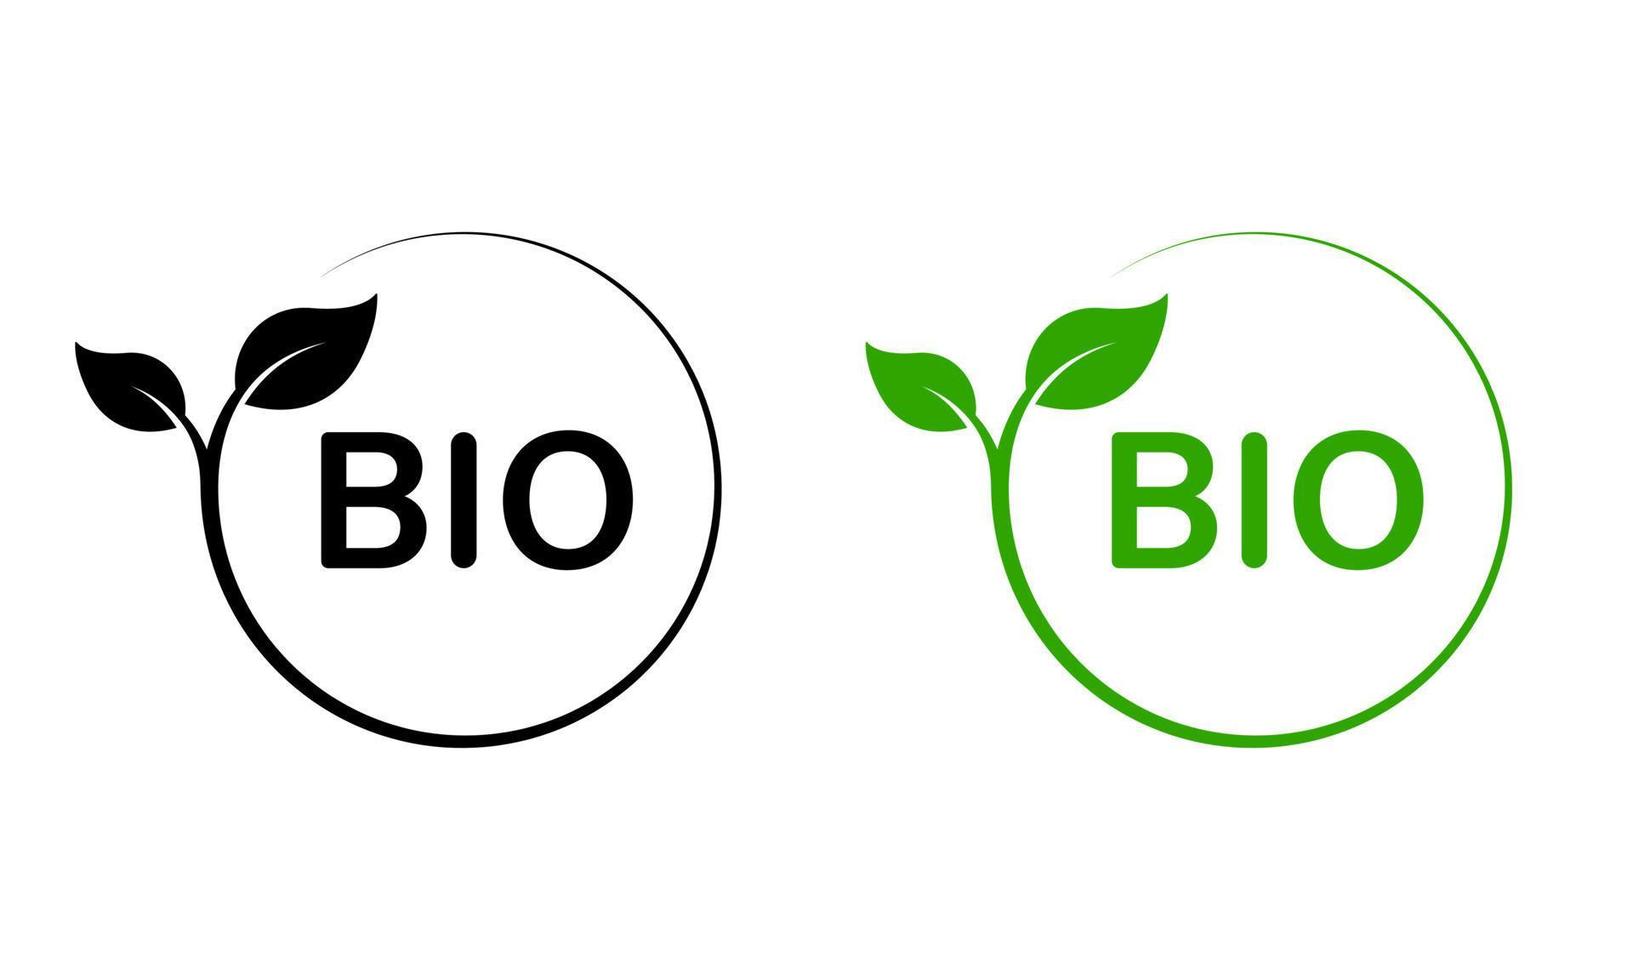 naturlig miljö bio emblem. bio grön växt stämpel. eco vänlig, friska vegetarian mat produkt organisk blad symbol. ekologisk vegan växt cirkel klistermärke. isolerat vektor illustration.